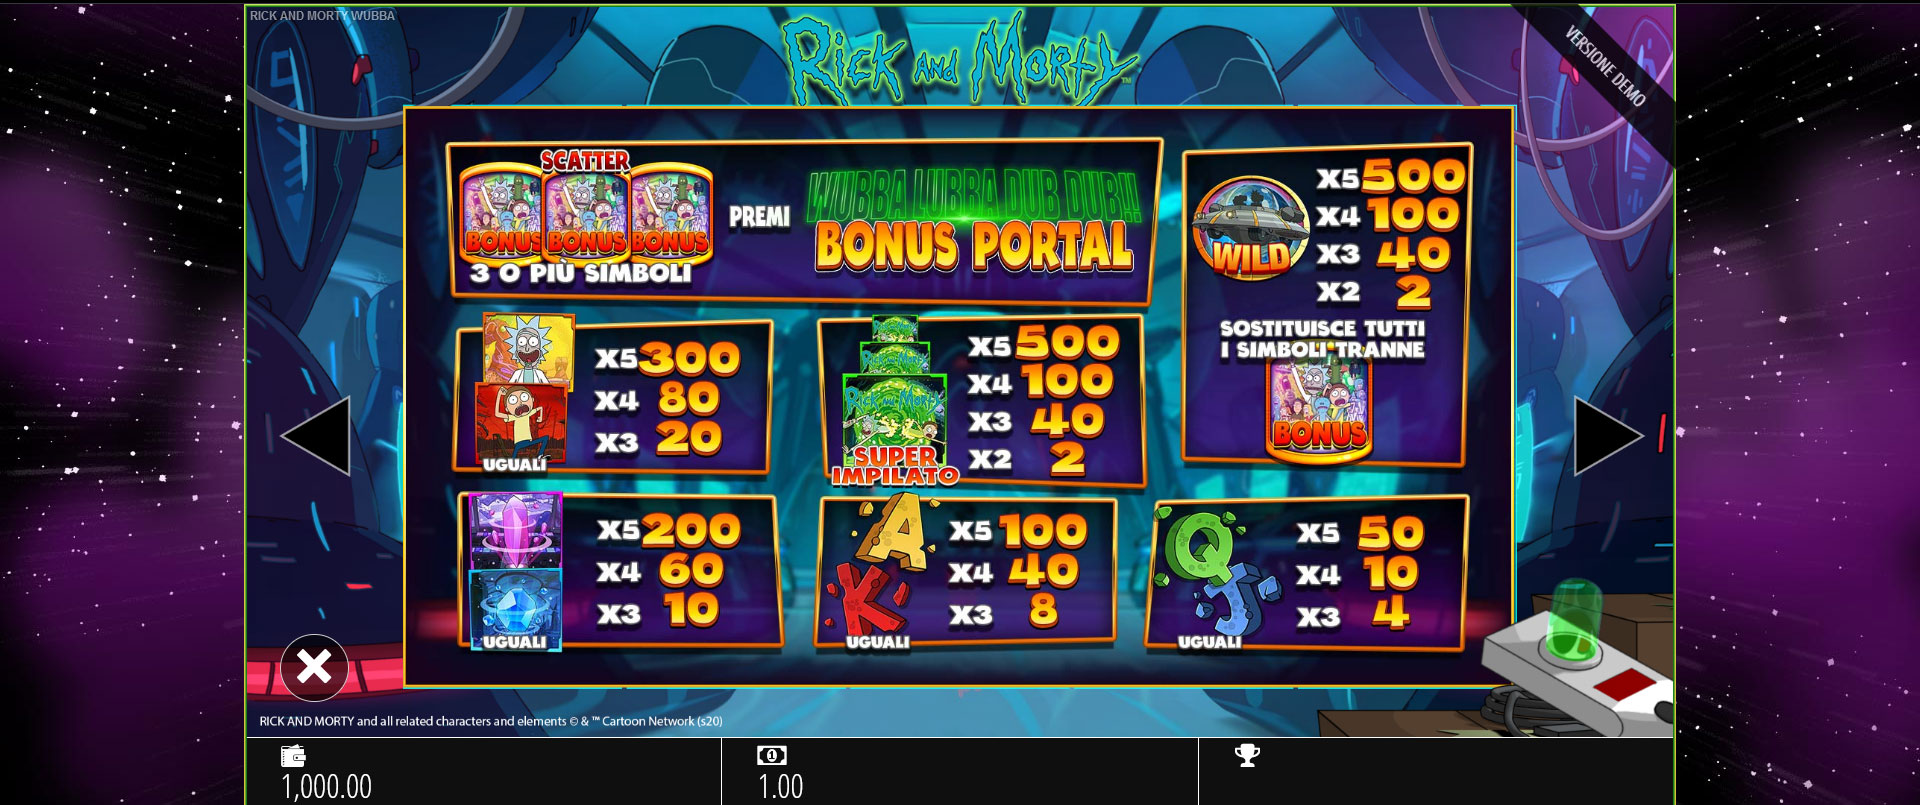 tabella dei pagamenti della slot machine rick and morty wubba lubba dub dub